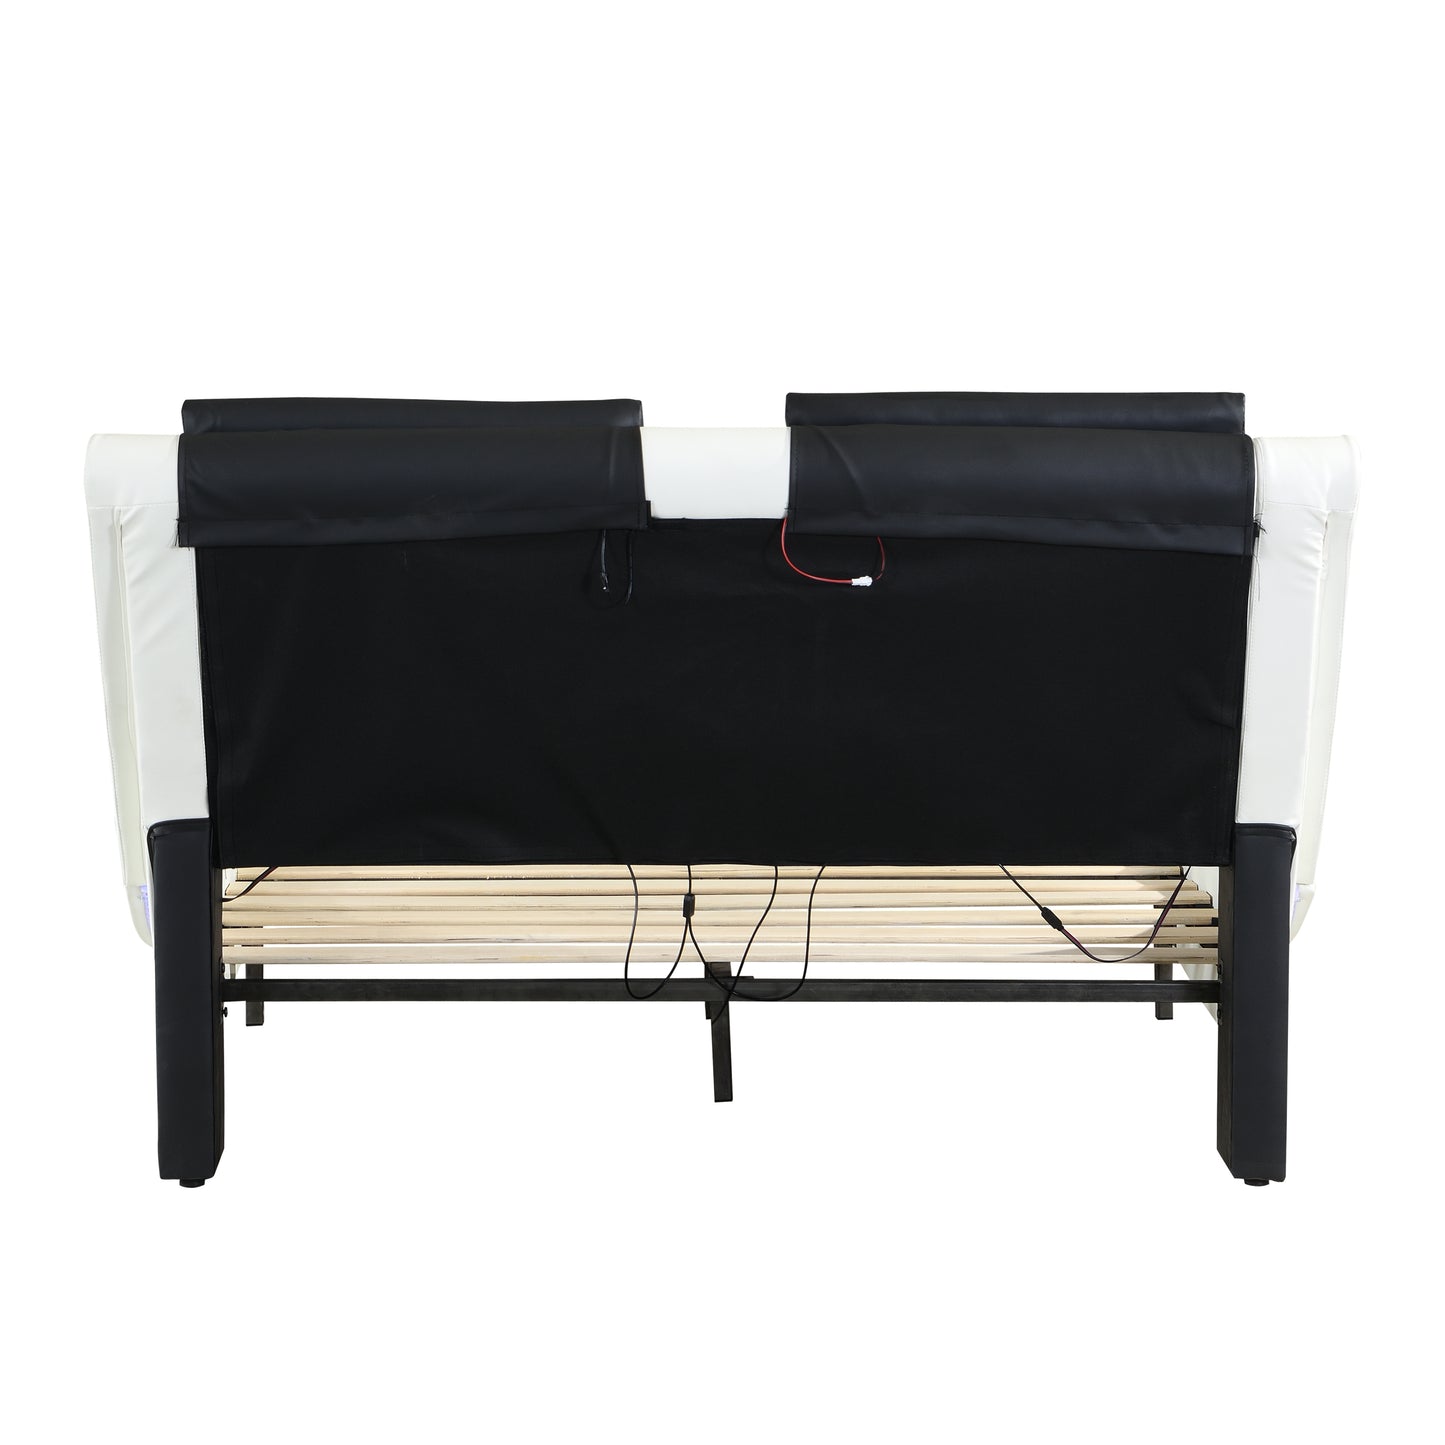 June Faux Leather Upholstered Platform Bed Frame with led lighting